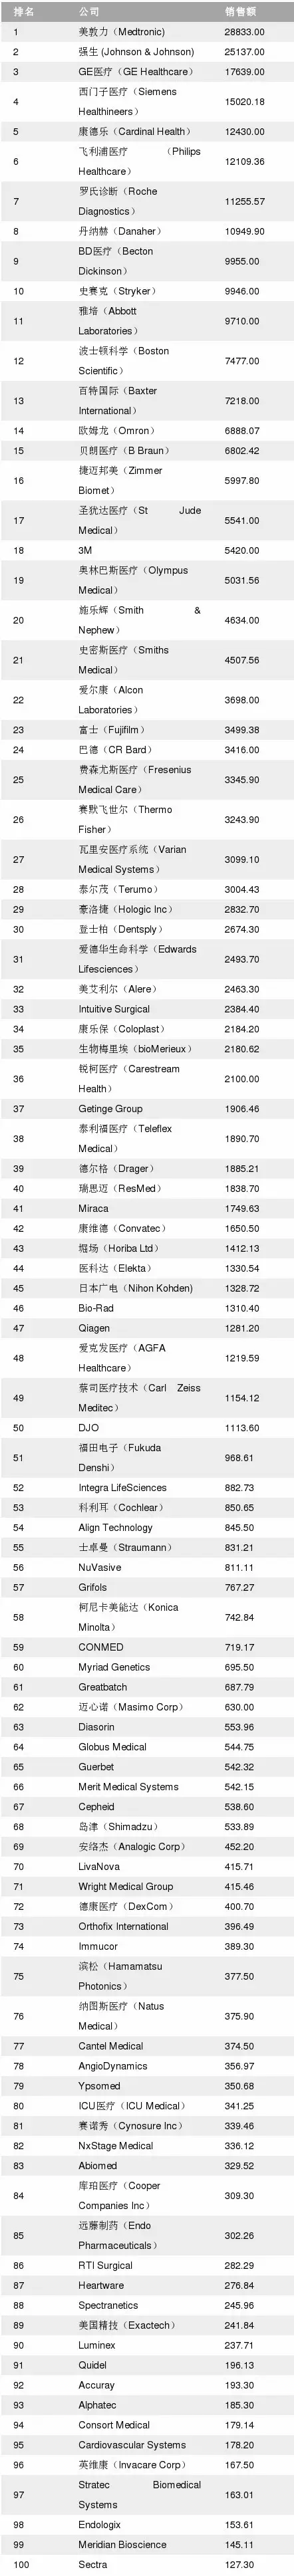 【TOP 100】全球顶级医疗器械厂商排名JBO竞博